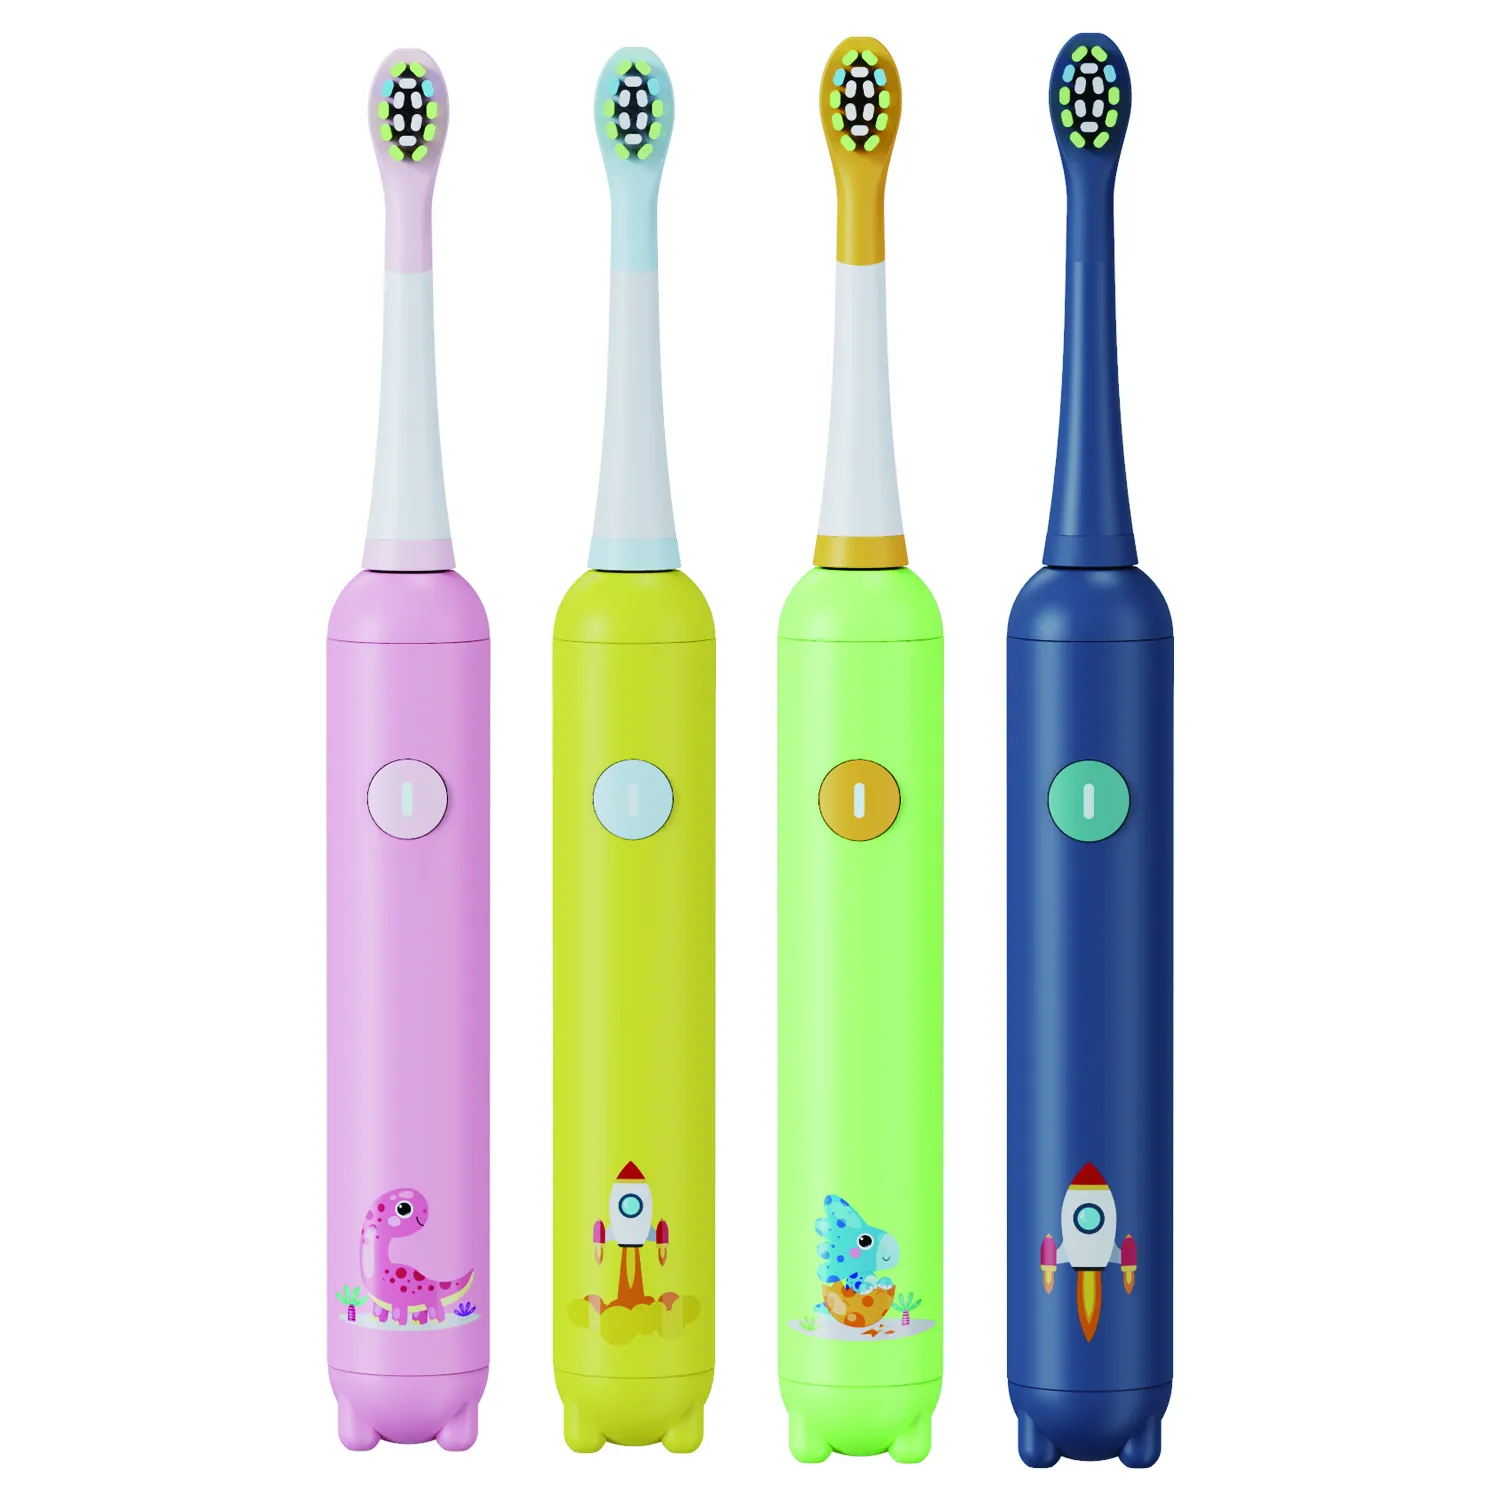 Eisler personnalisé enfants brosse à dents électrique sonique douce USB charge Ipx7 maison brosse à dents électrique pour enfants